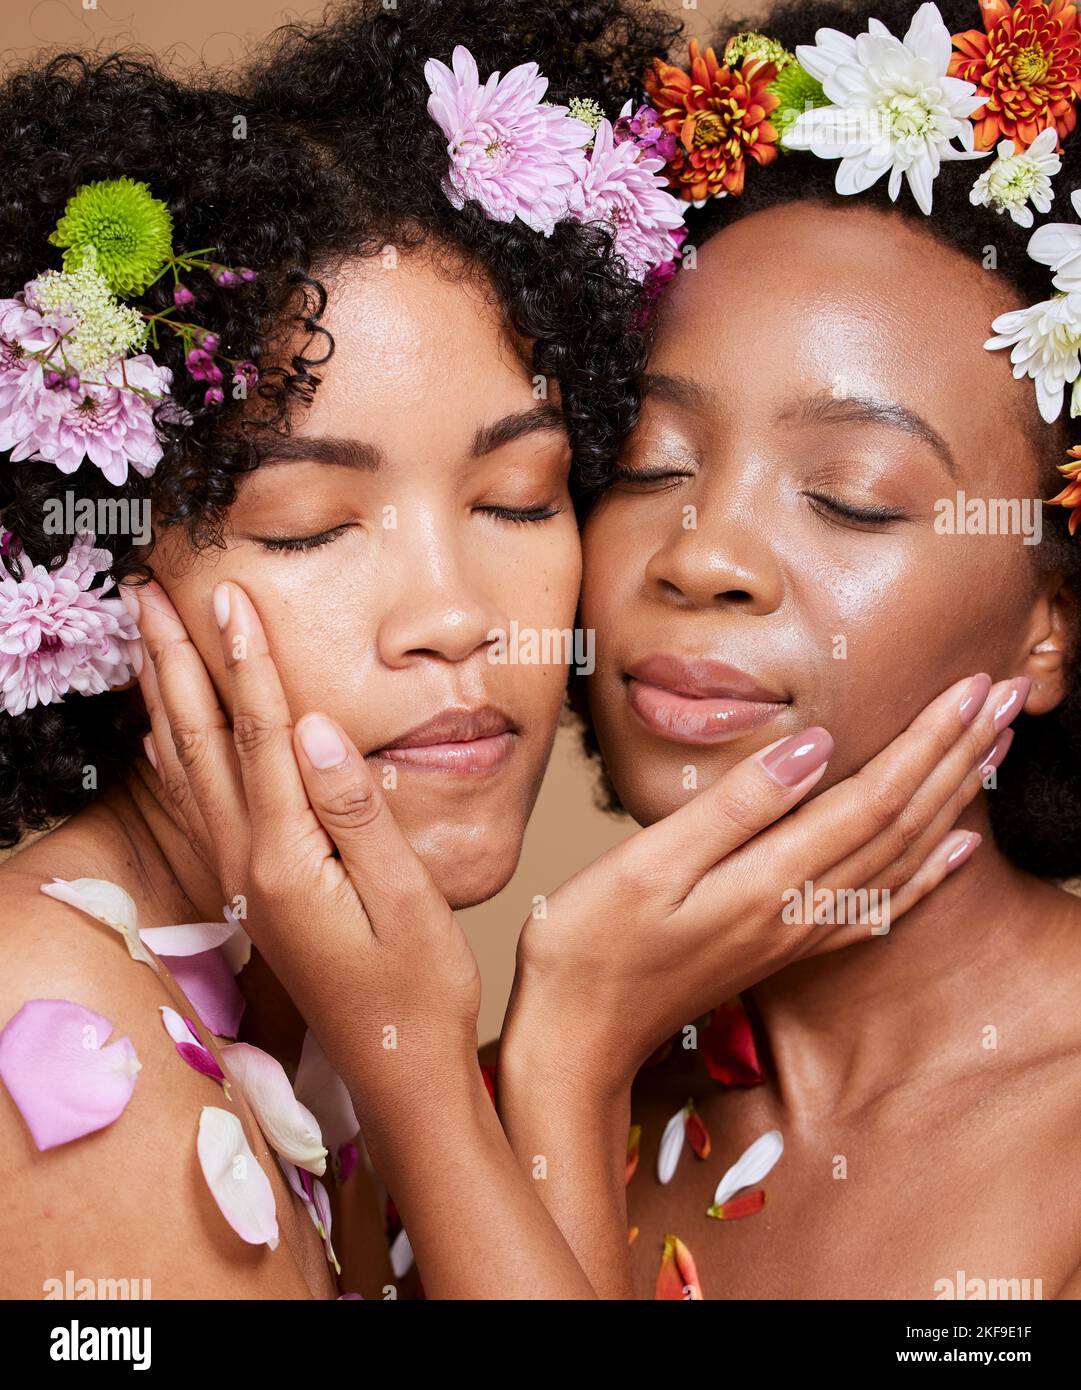 Occhi chiusi, bellezza e donne nere con fiori per la cura della pelle in studio su sfondo marrone. Cosmetici biologici, trucco estetica e gruppo, amici Foto Stock